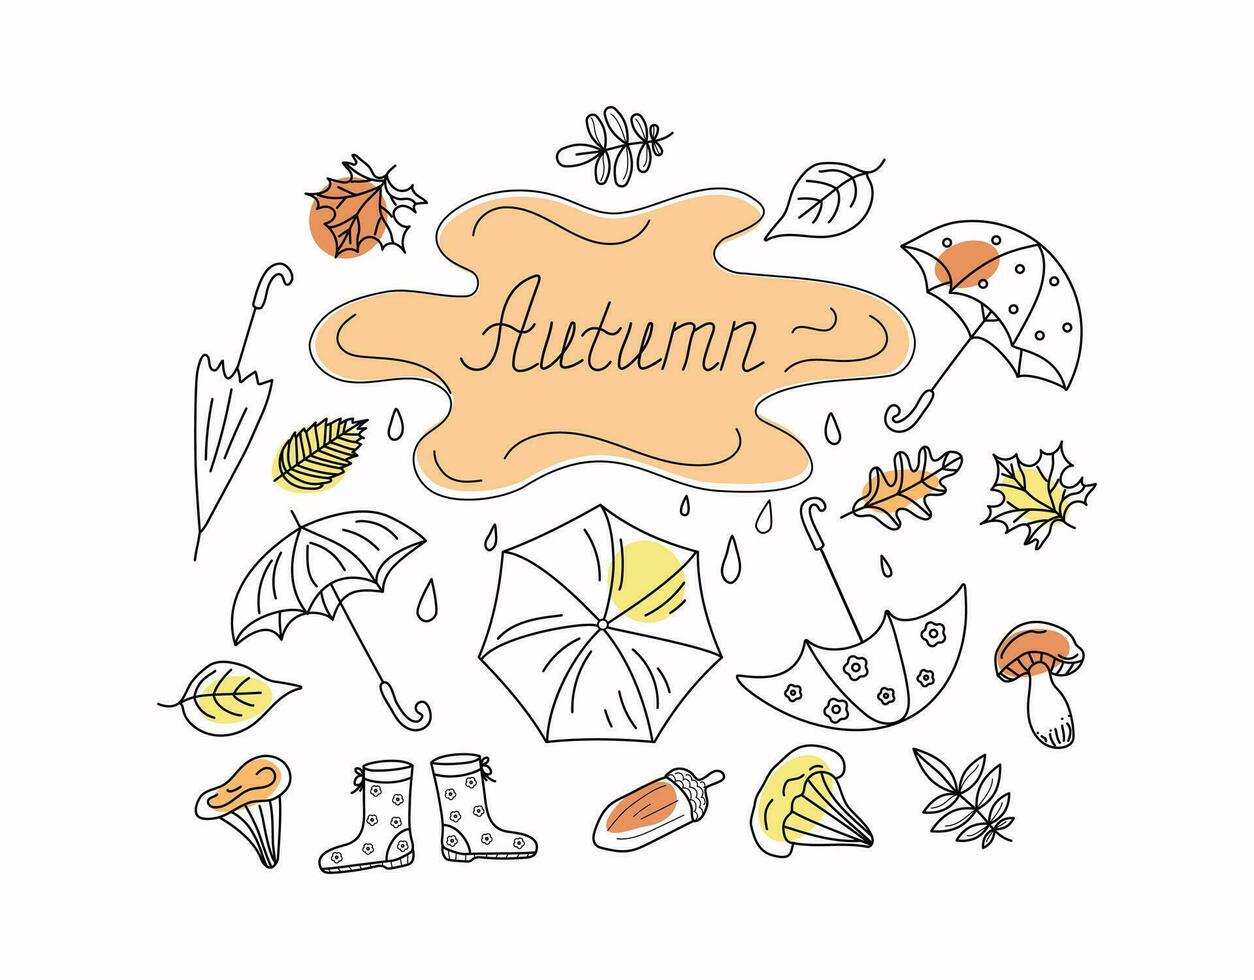 Herbst einstellen von Regenschirme, Blätter, Pilze, Gummi Stiefel. Regen, Blatt fallen. Gekritzel Stil Vektor Illustration. Kontur Zeichnungen. Hintergrund Weiß isoliert.